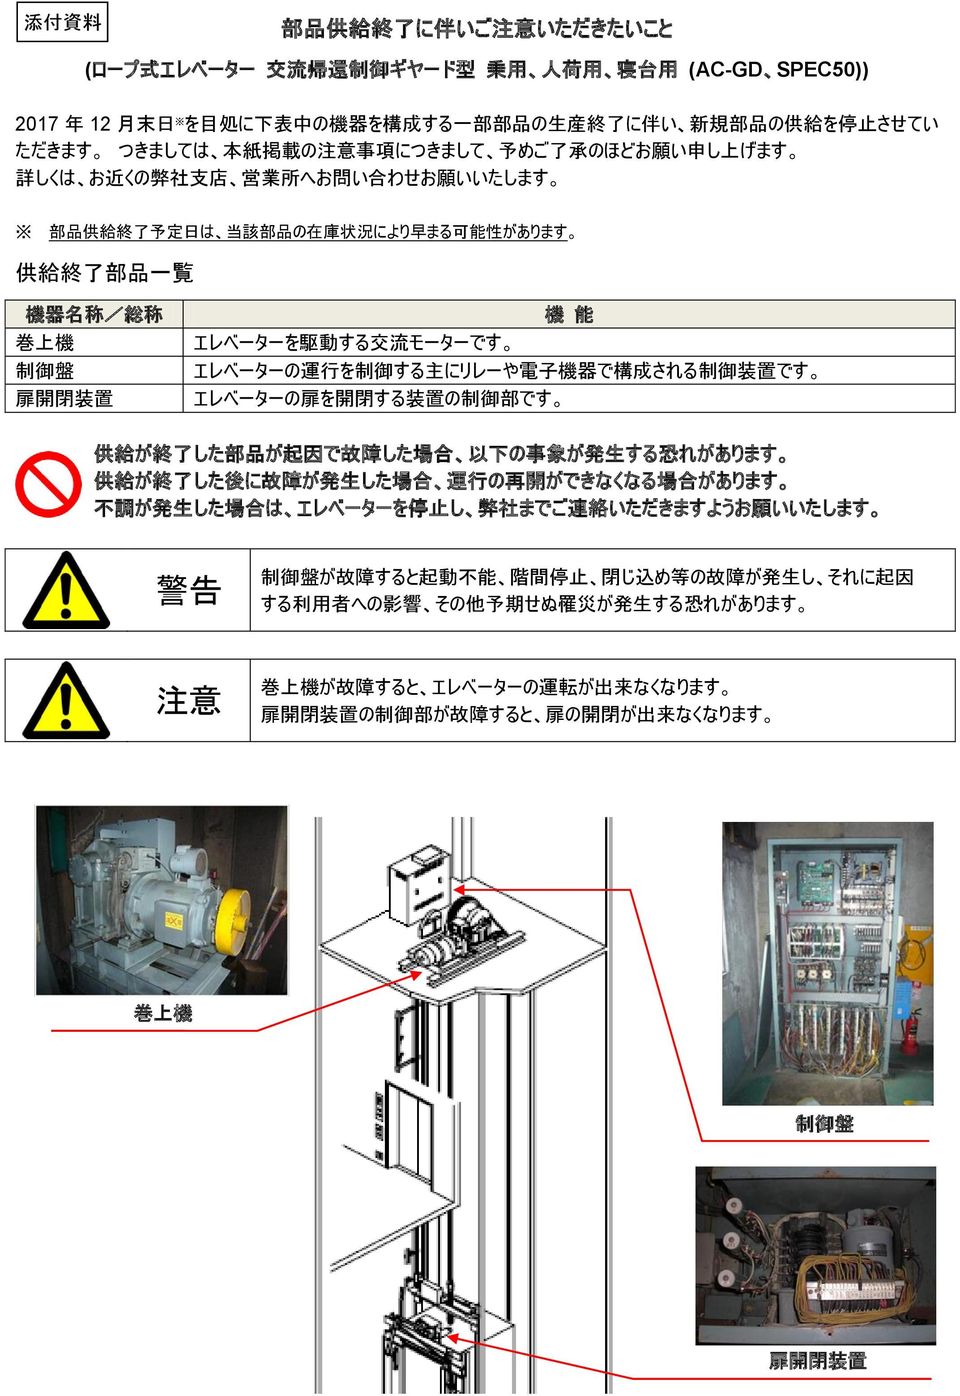 エレベーターの 運 行 を 制 御 する 主 にリレーや 電 子 機 器 で 構 成 される 制 御 装 置 です が 故 障 すると 起 動 不 能 階 間 停 止 閉 じ 込 め 等 の 故 障 が 発 生 し それに 起 因